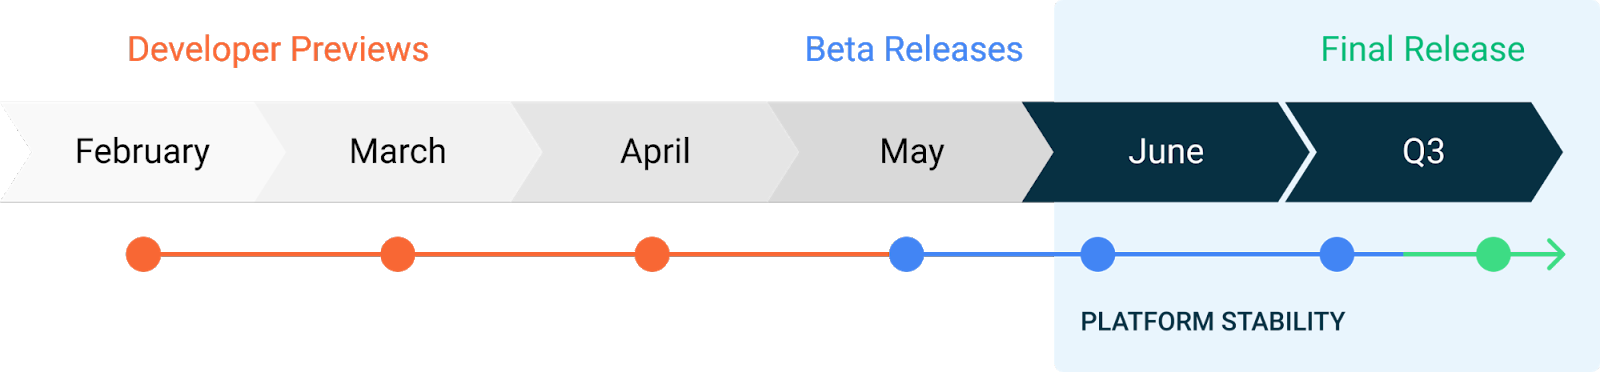 Calendário de atualizações do Android 11 indica que betas públicos devem ser lançados a partir de maio.